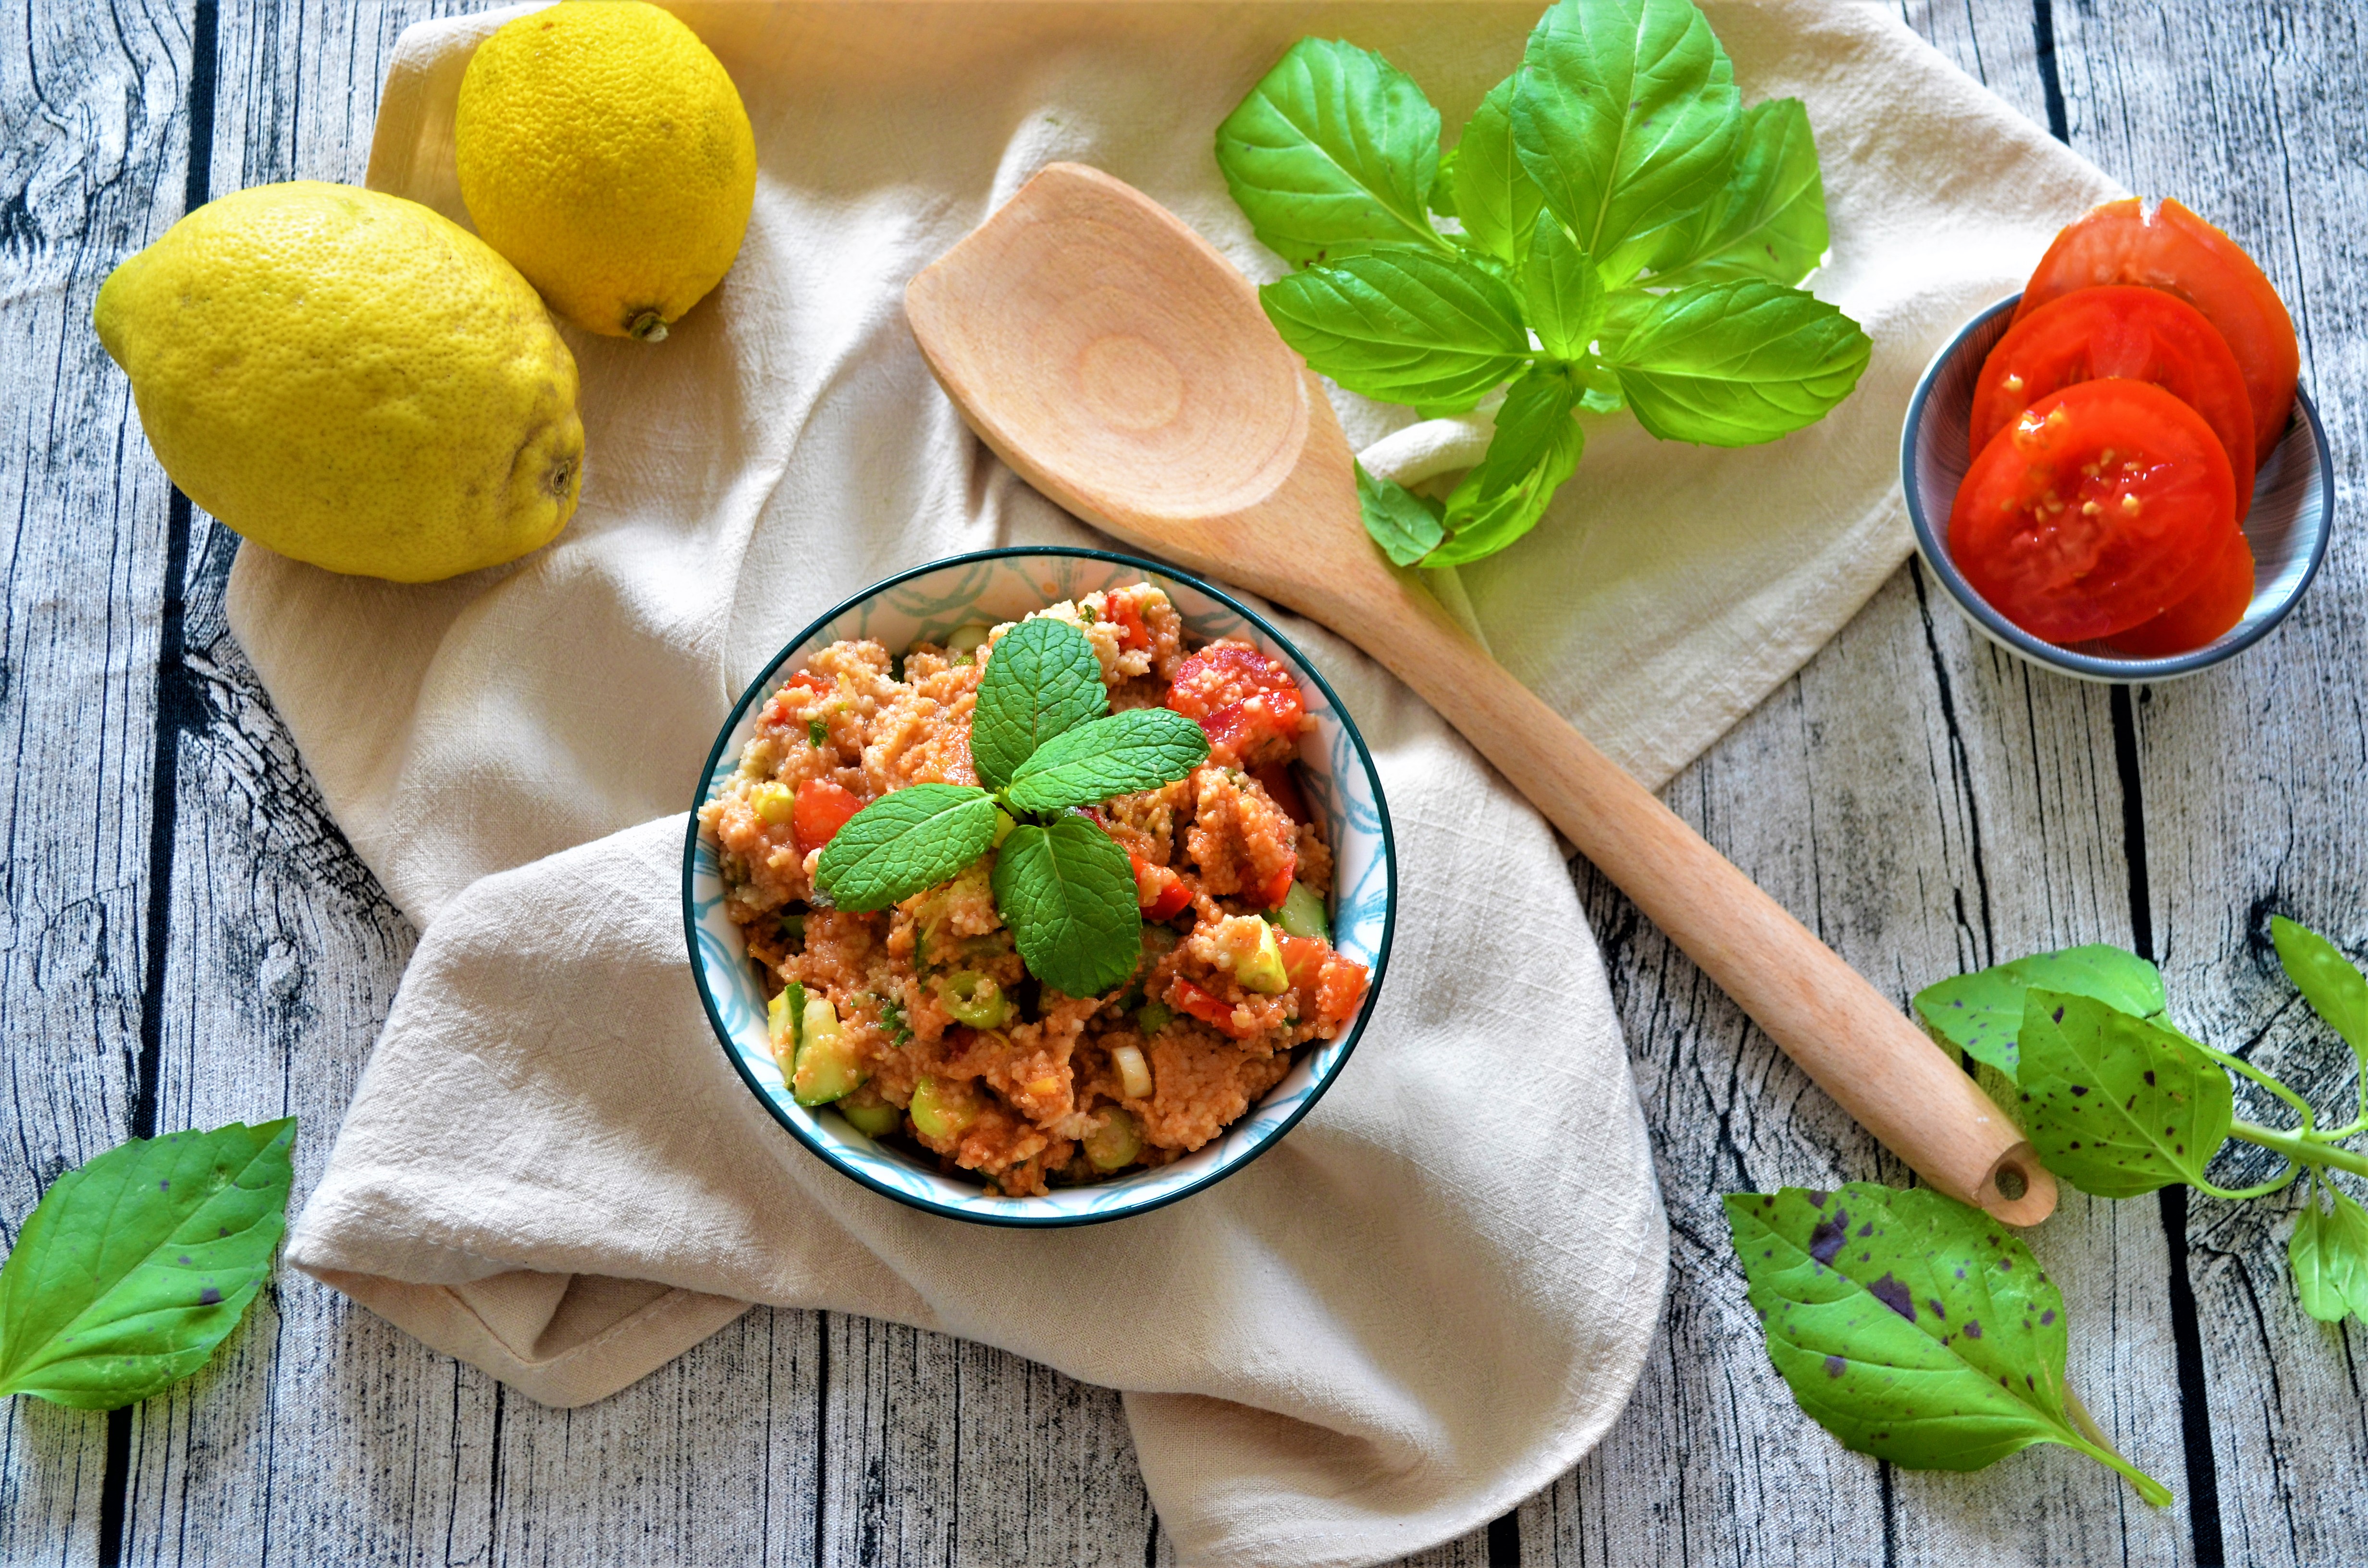 Rezept: Orientalischer Couscous-Salat mit frischem Gemüse und Zitronenzeste 0 (0)